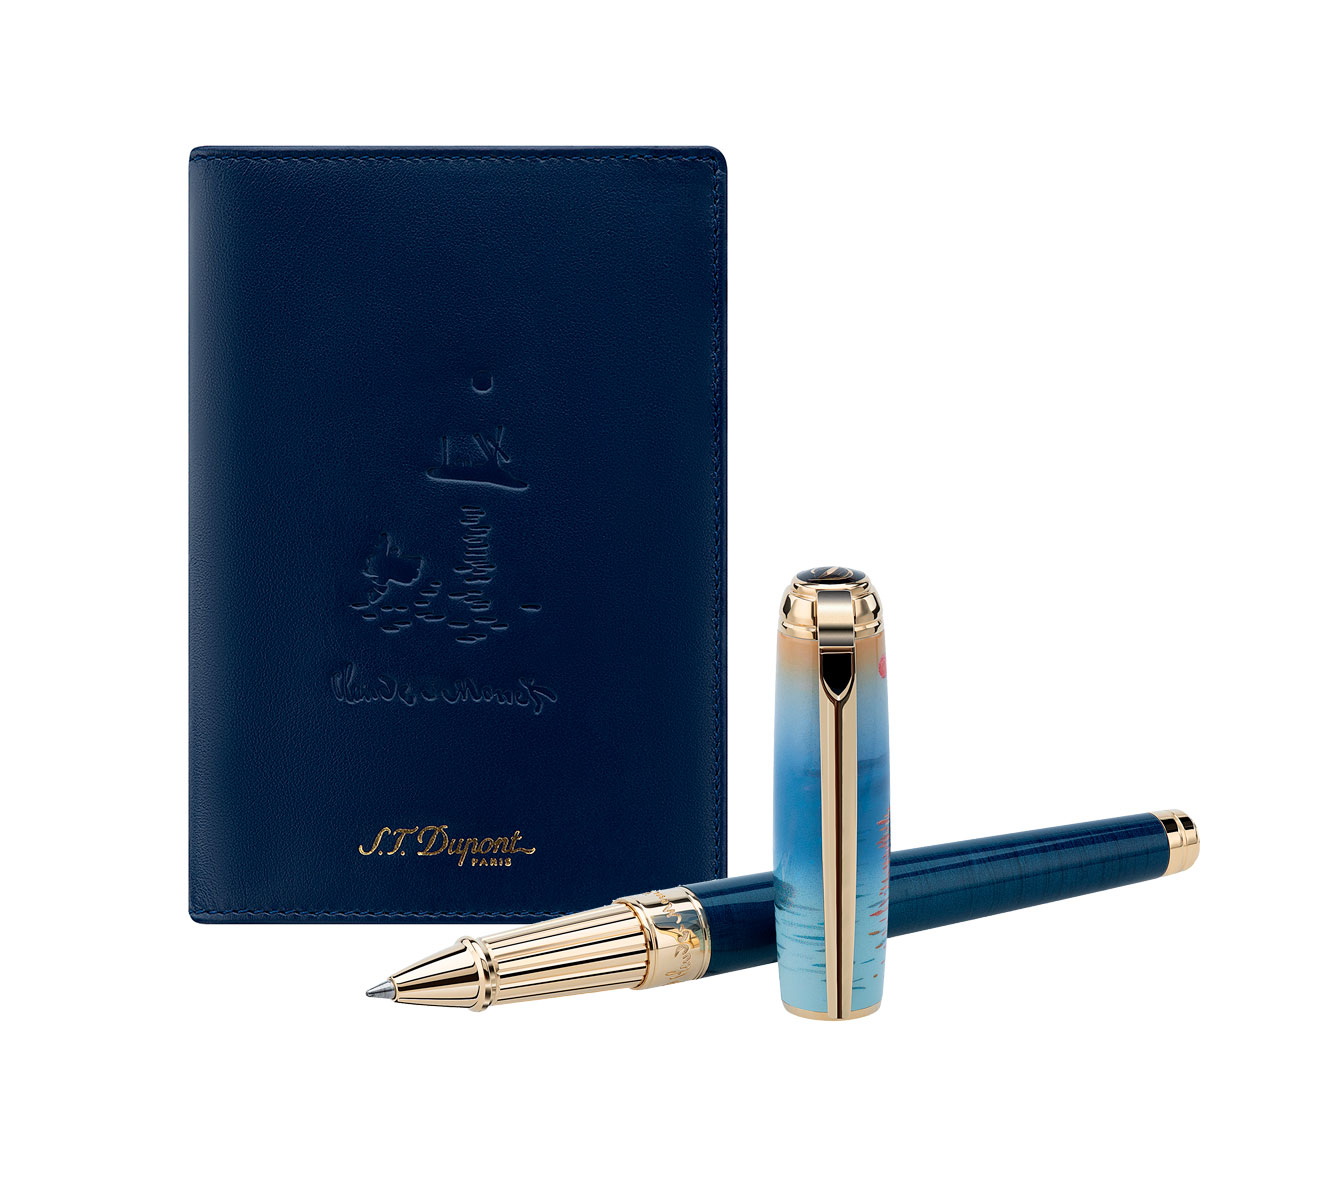 Подарочный набор: ручка и обложка для паспорта S.T. Dupont Monet 410049LC2 - фото 3 – Mercury